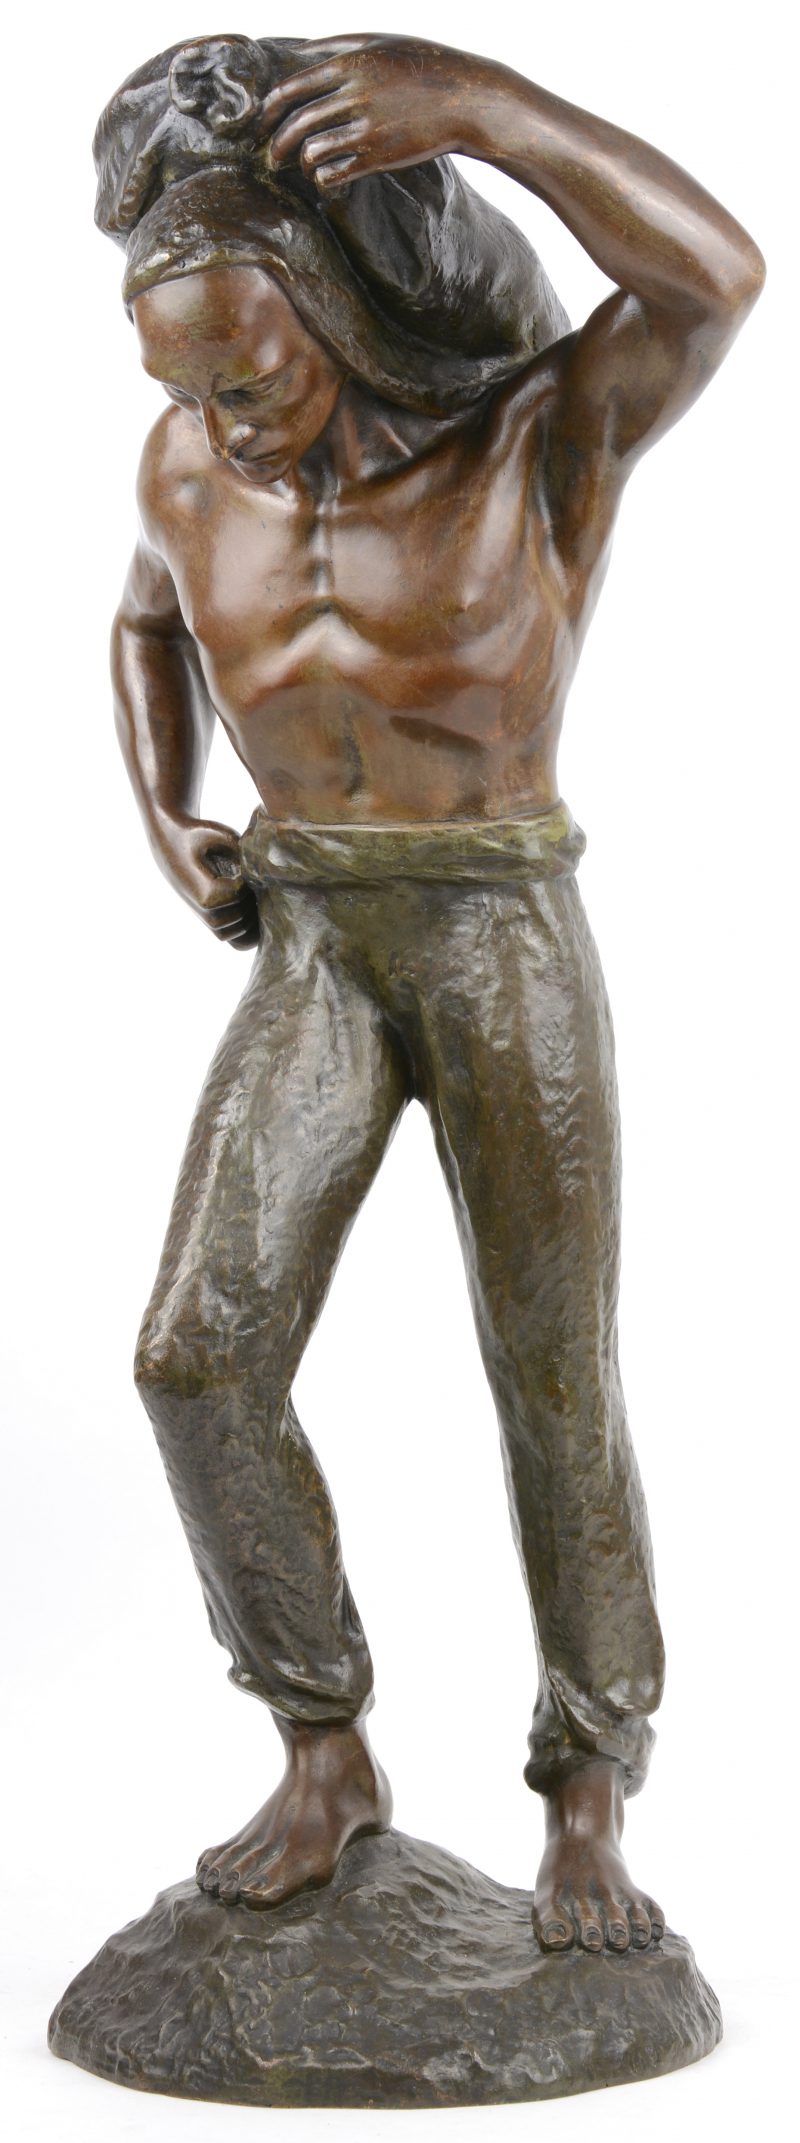 “De buildrager”. Een beeld van bruingepatineerd brons naar een werk van Sylvain Norga.